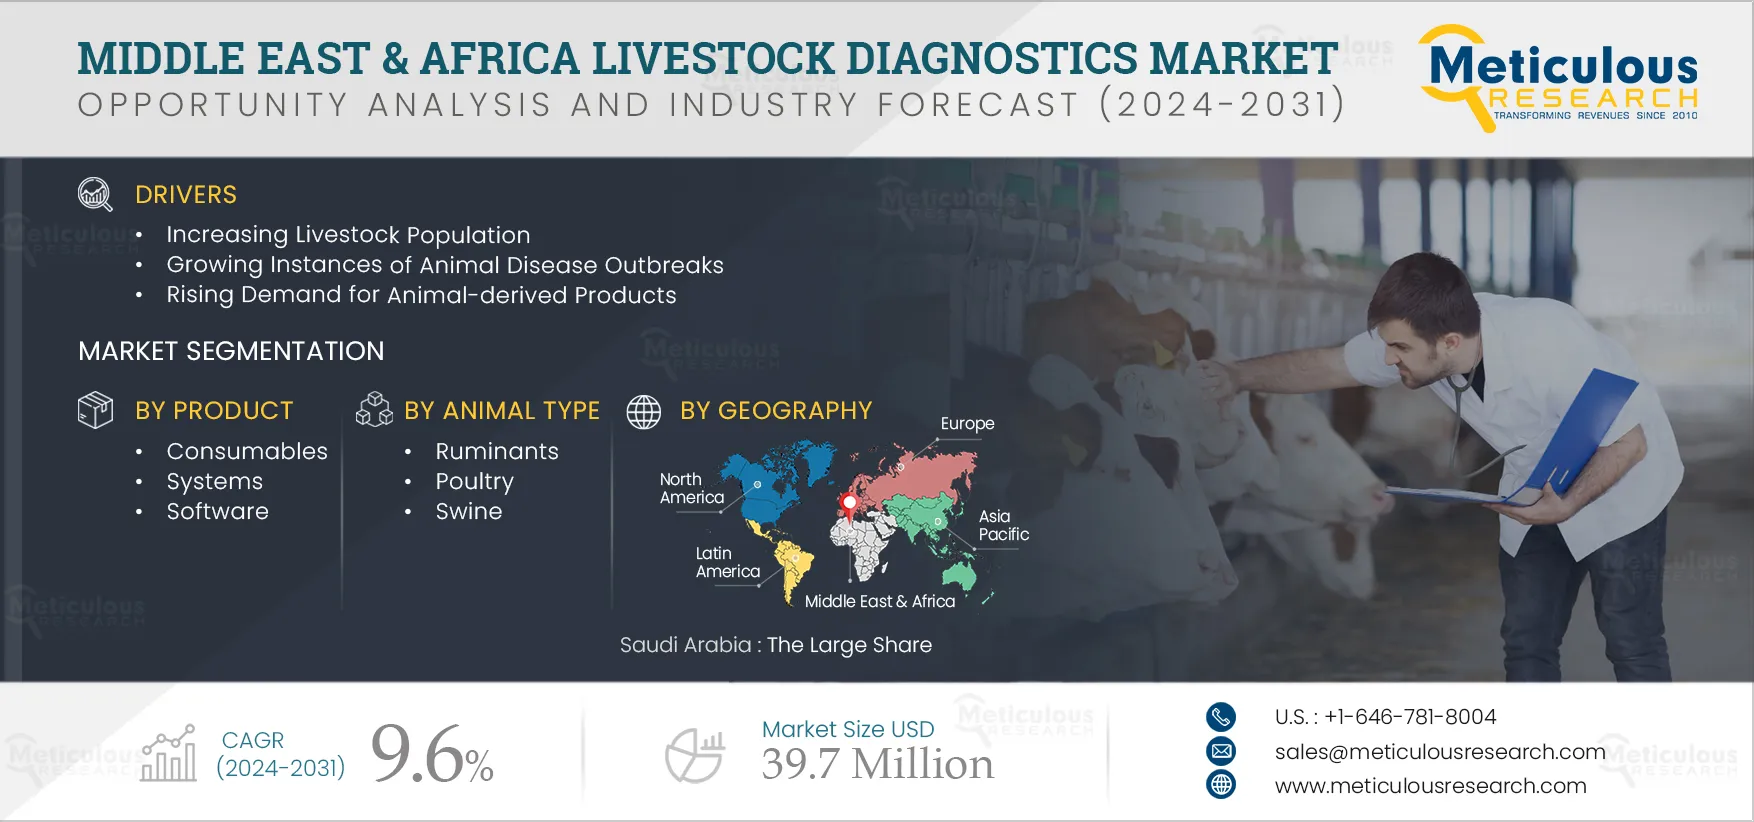 Middle East & Africa Livestock Diagnostics Market 